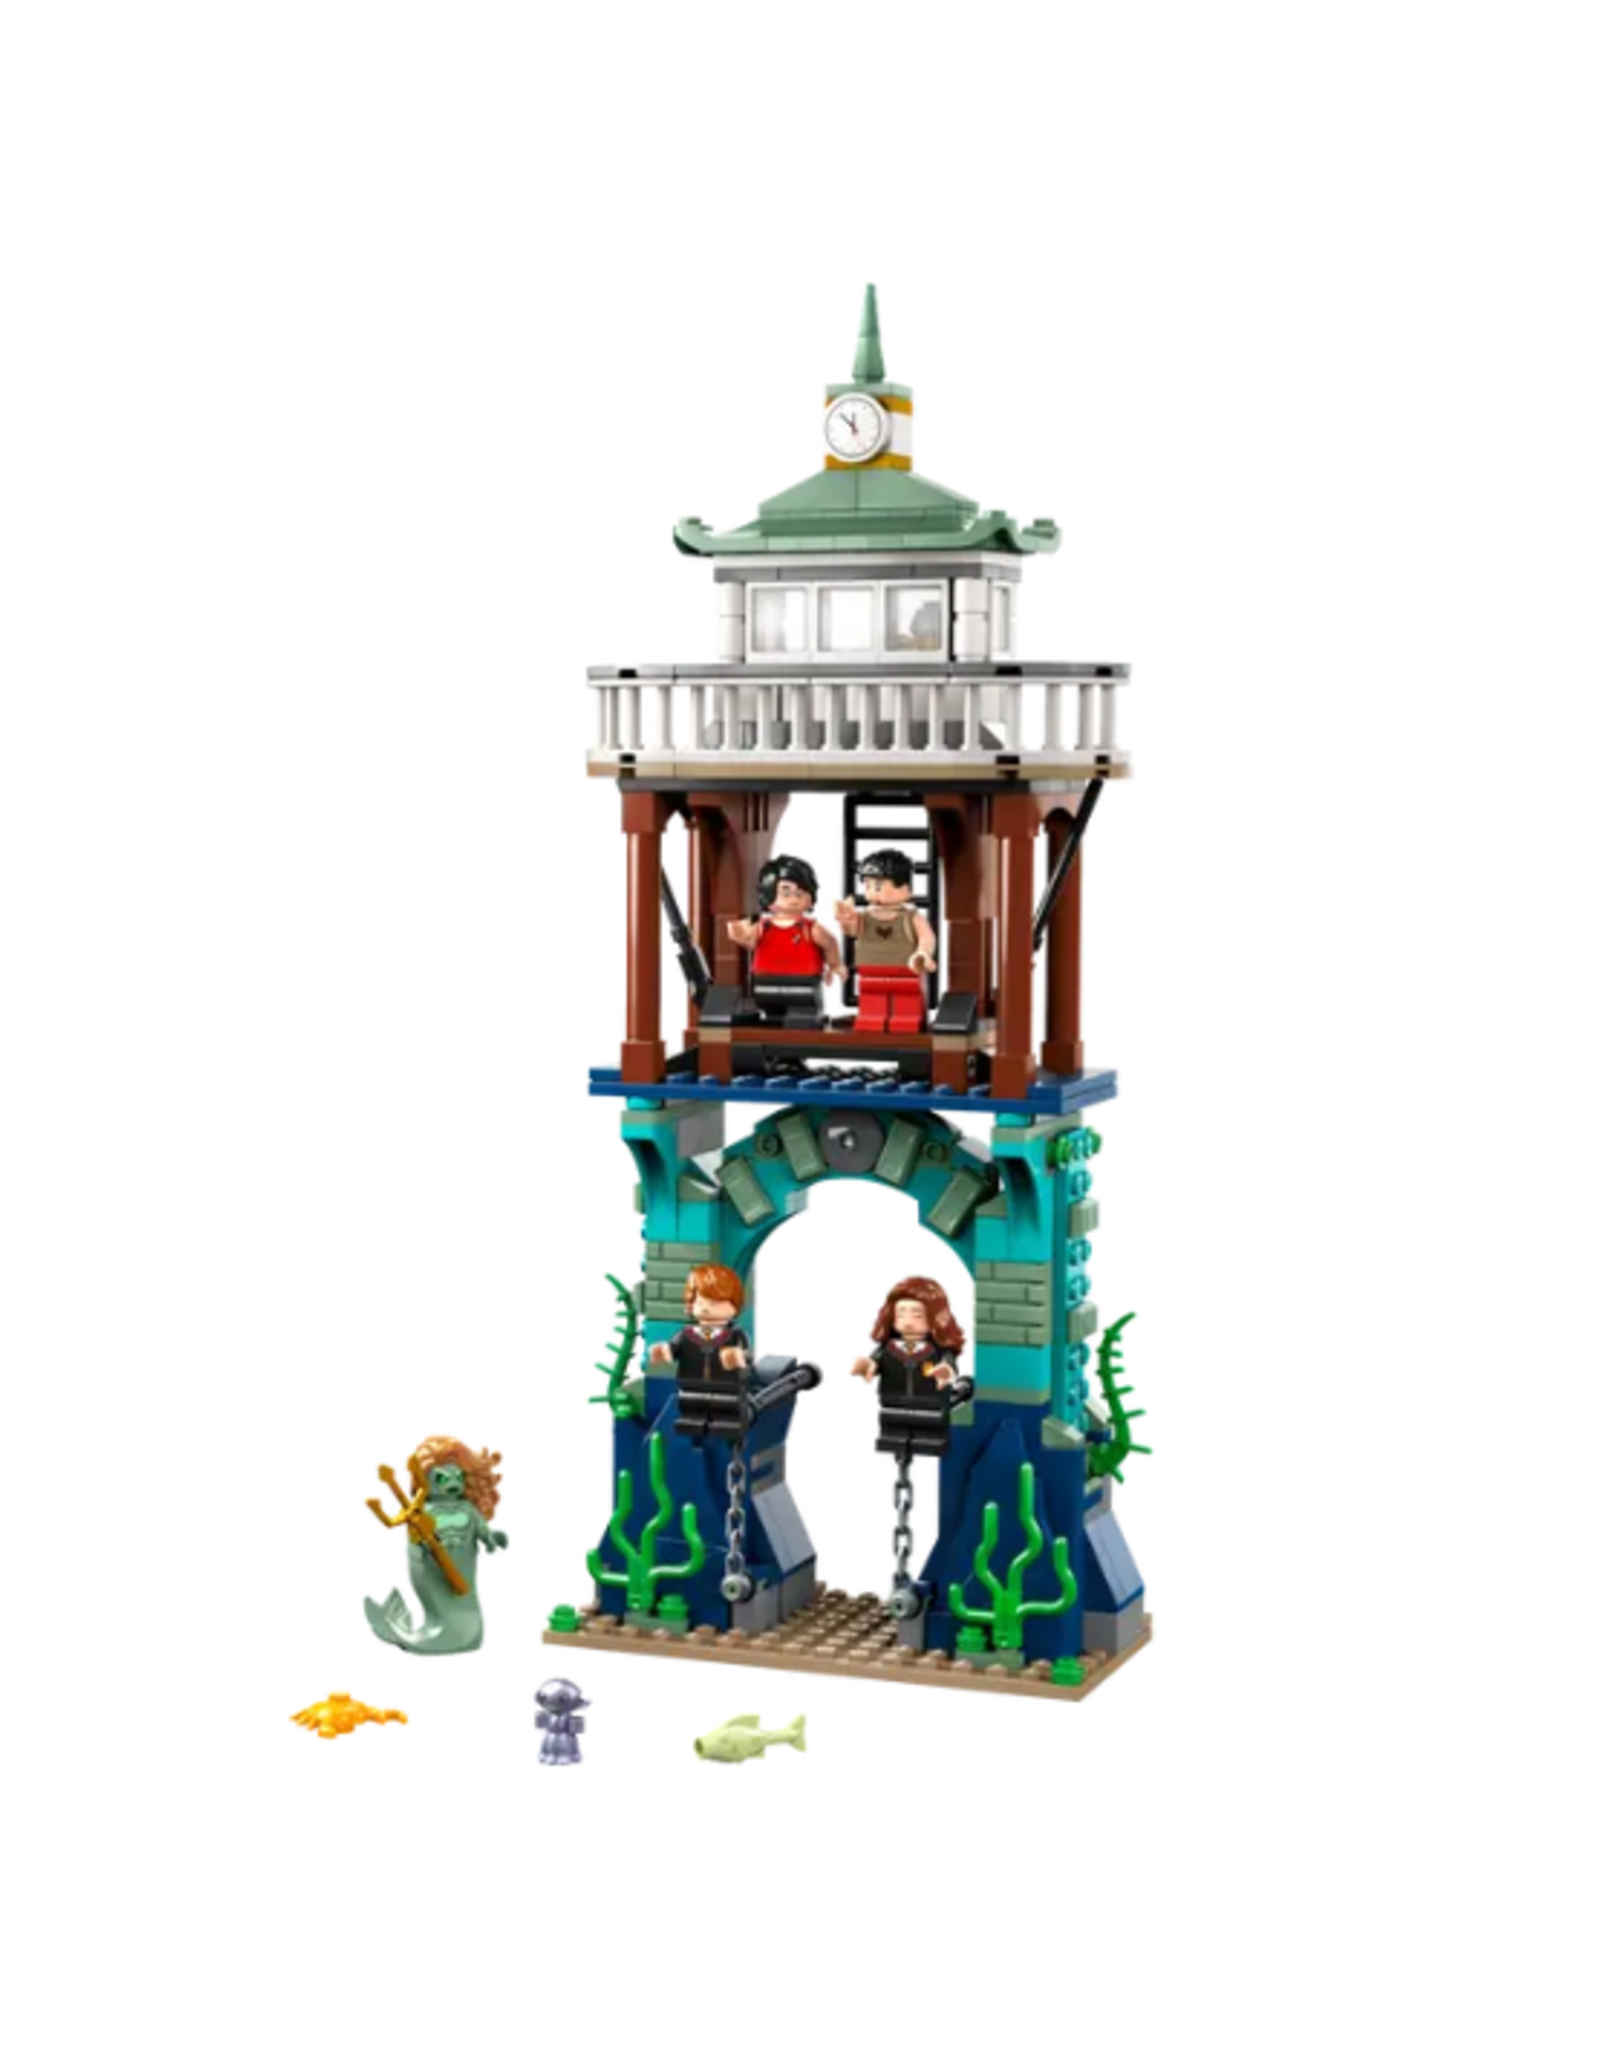 Lego Lego - Harry Potter - 76420 - Triwizard Tournament: The Black Lake